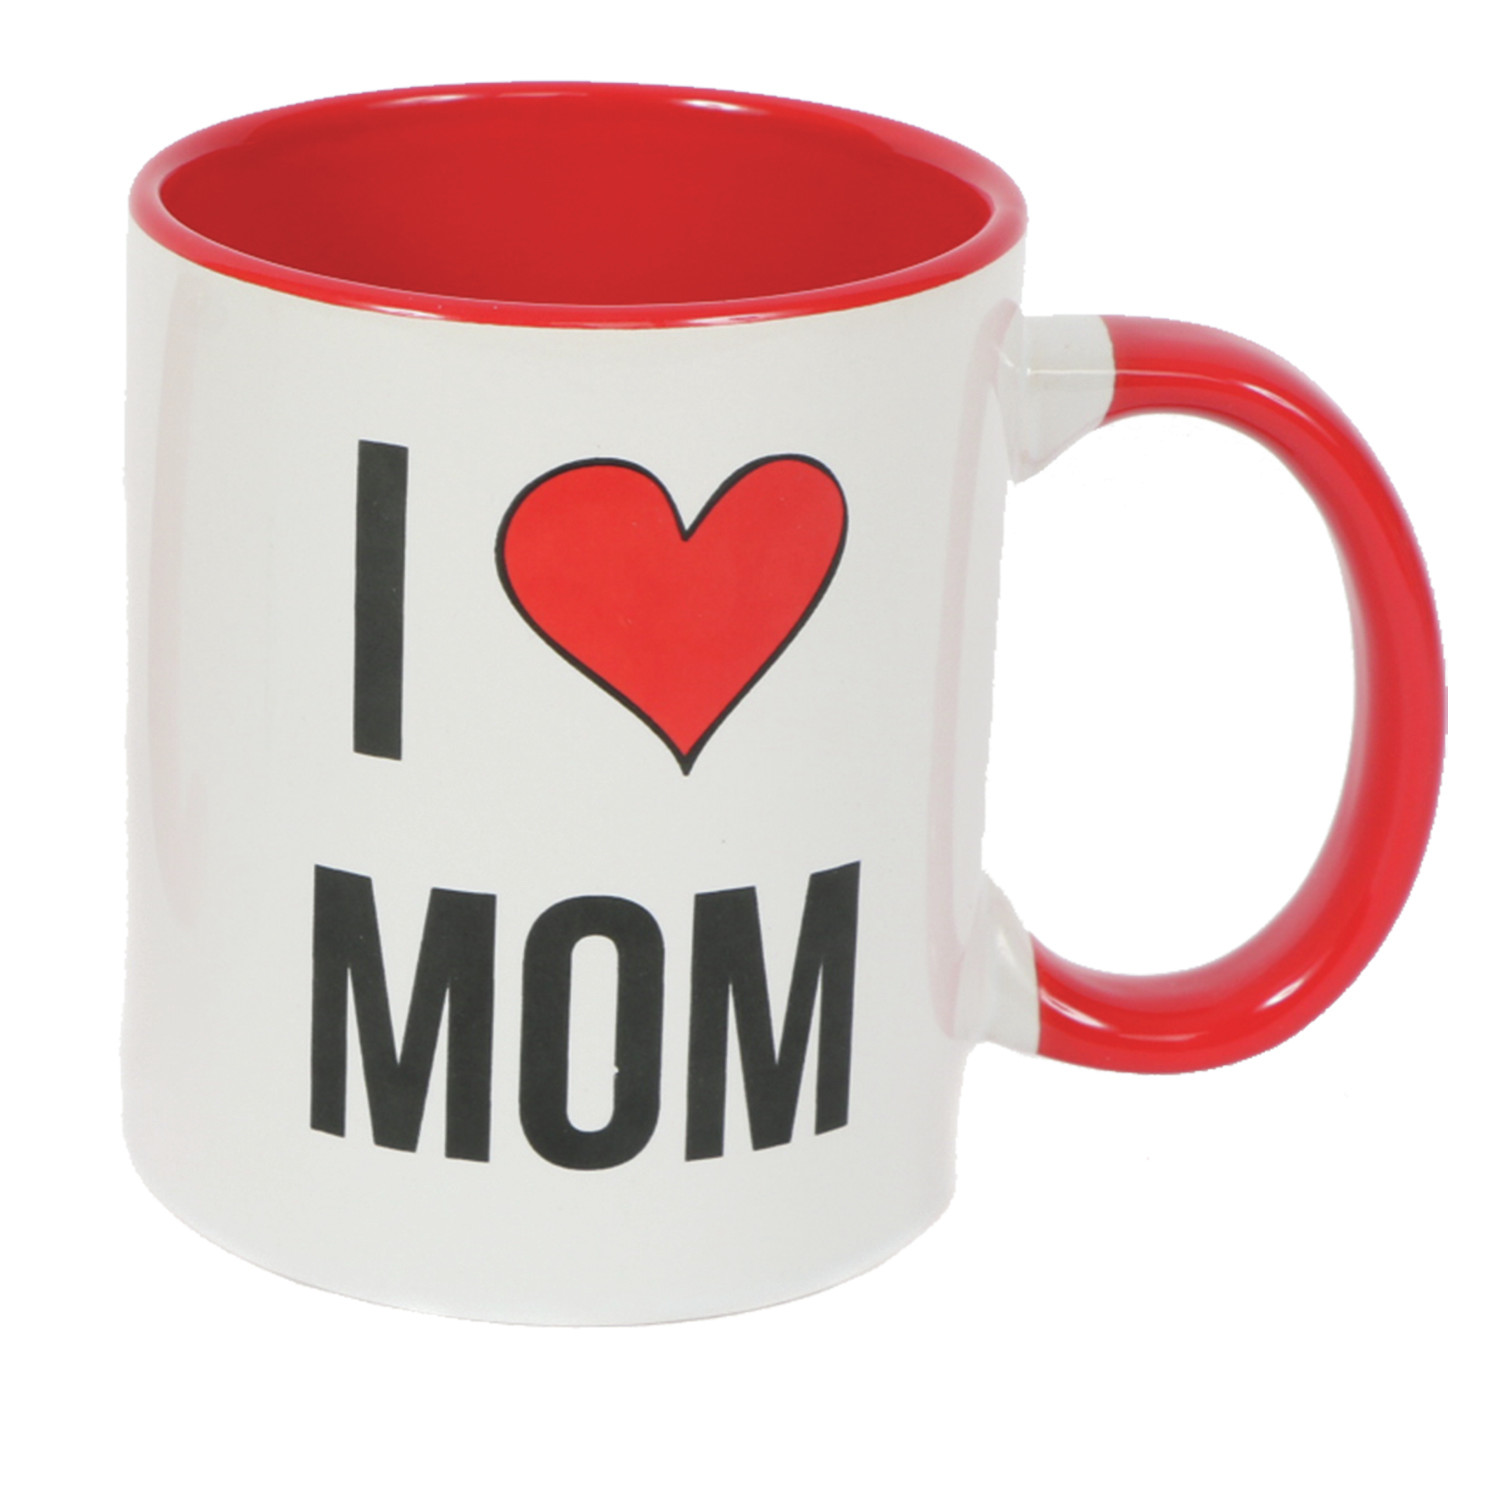 i love mom mug Image from wayfair.com.